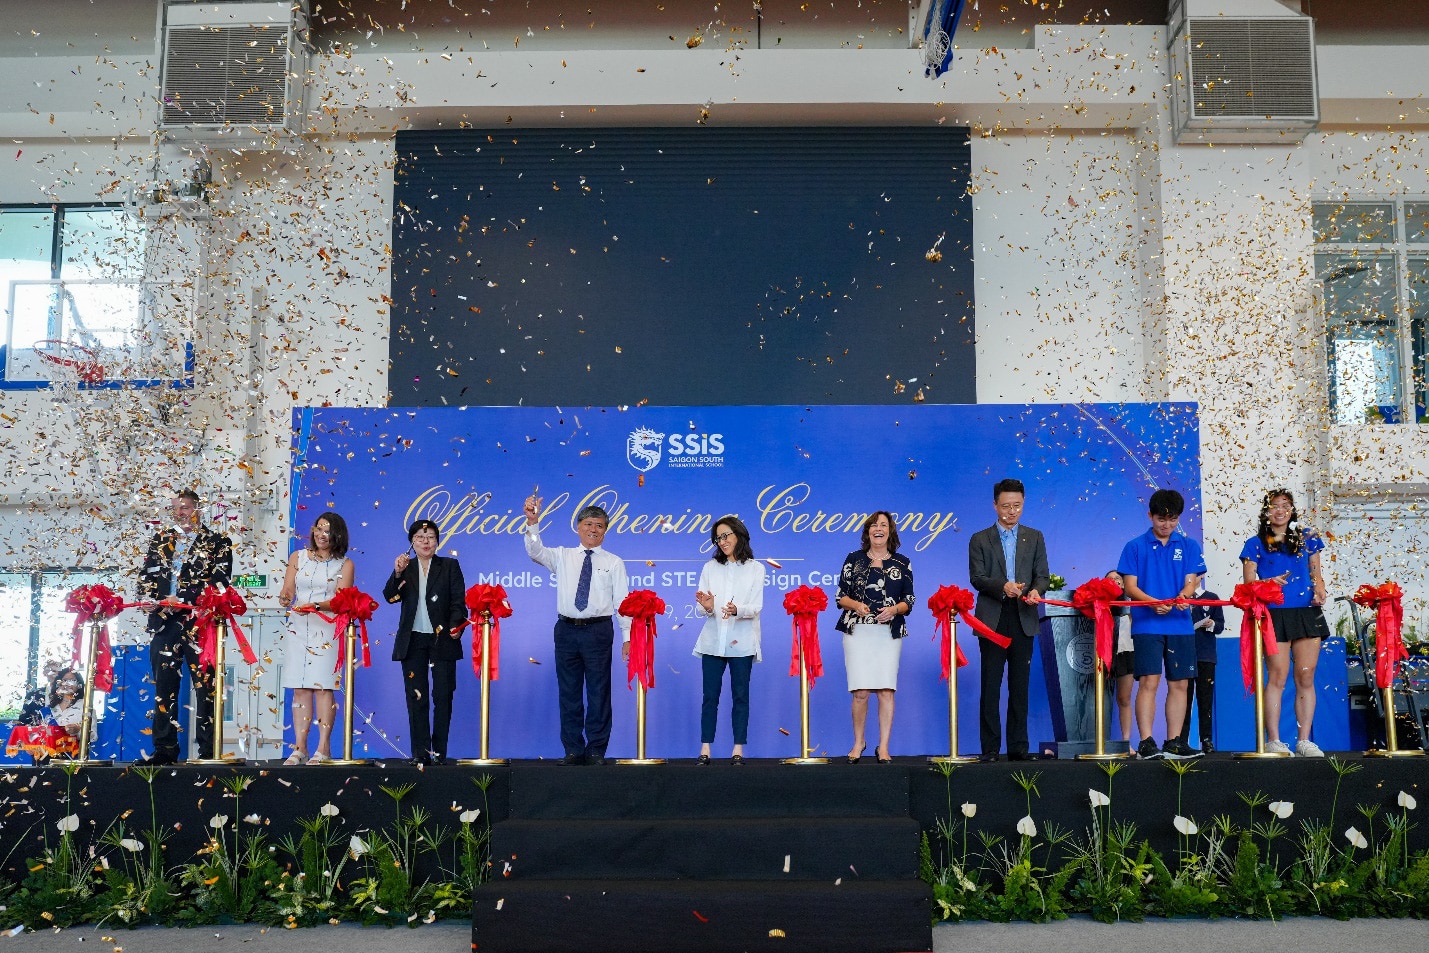 Lễ khánh thành trường THCS và trung tâm thiết kế STEAM của Trường Quốc tế Nam Sài Gòn - Ảnh: SSIS